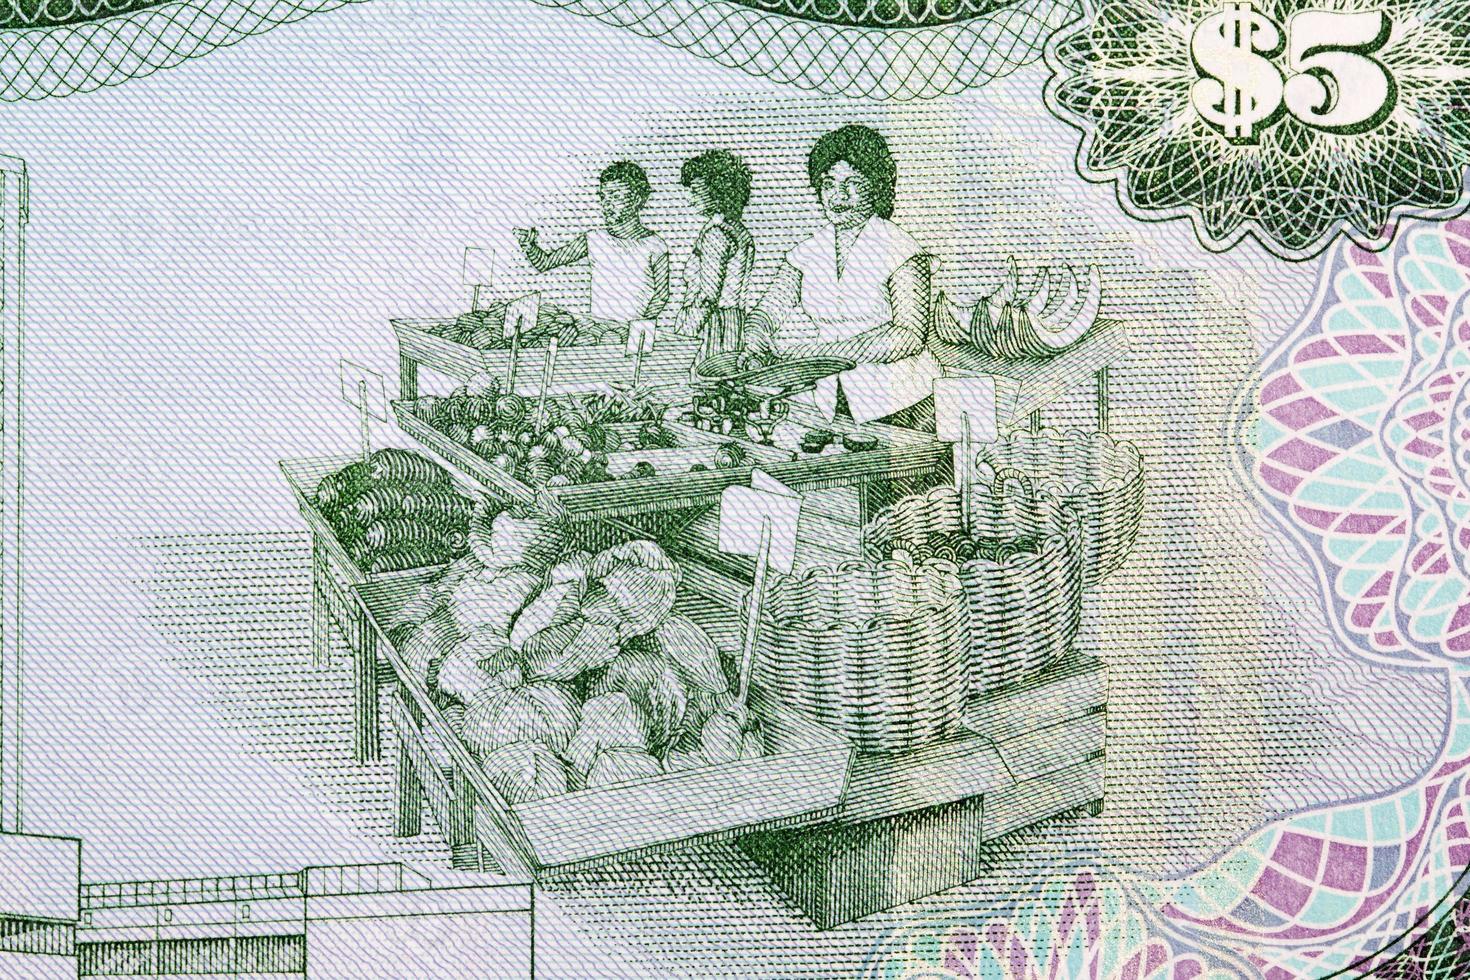 Dames Bij langs de weg produceren staan van geld van Trinidad en Tobago foto